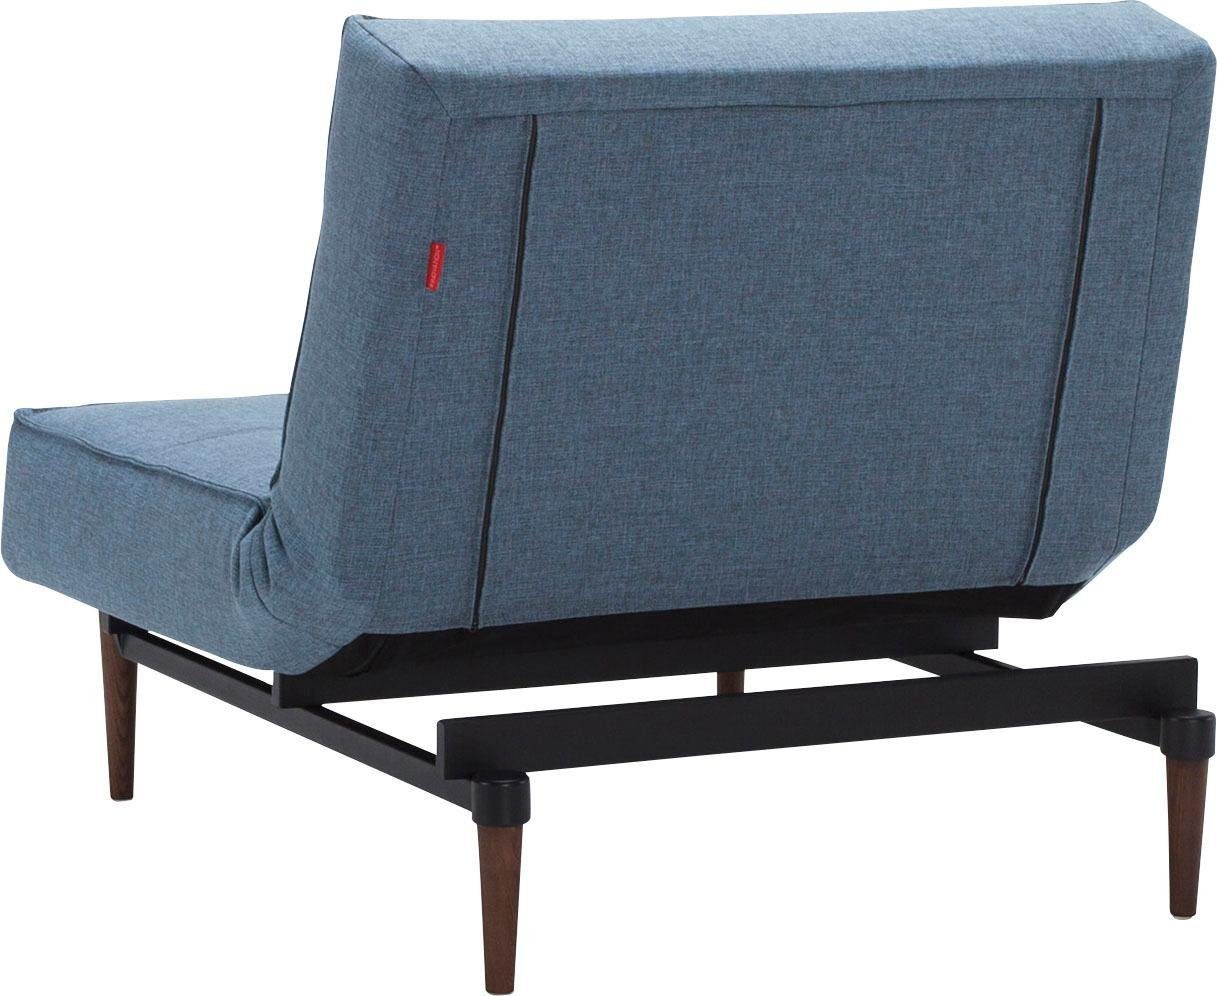 Splitback, dunklen skandinavischen in Beinen, Styletto Design ™ Sessel INNOVATION LIVING mit